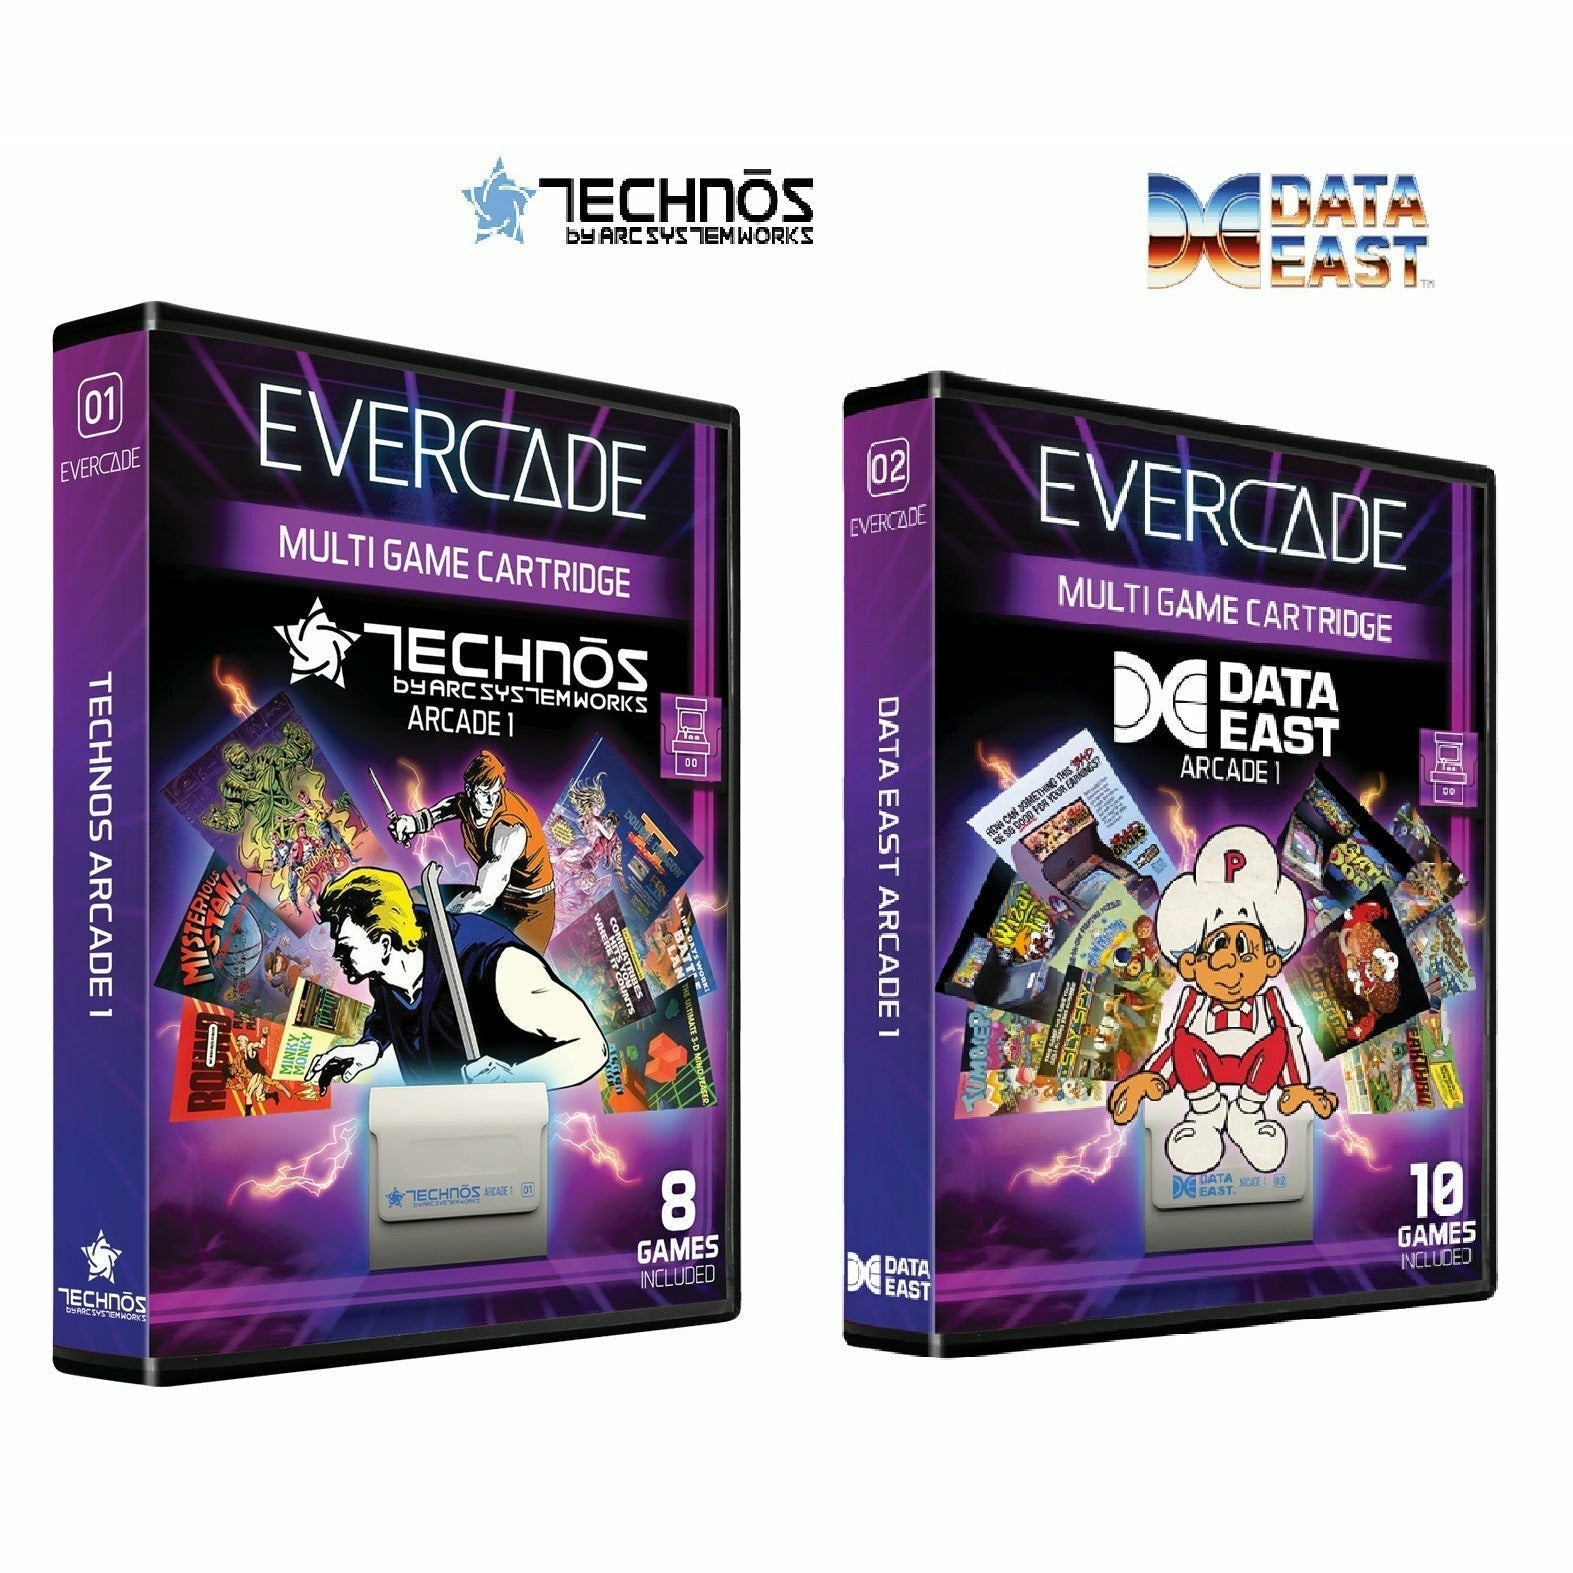 Evercade Technos Arcade & Data East Arcade Bundle - CastleMania Games